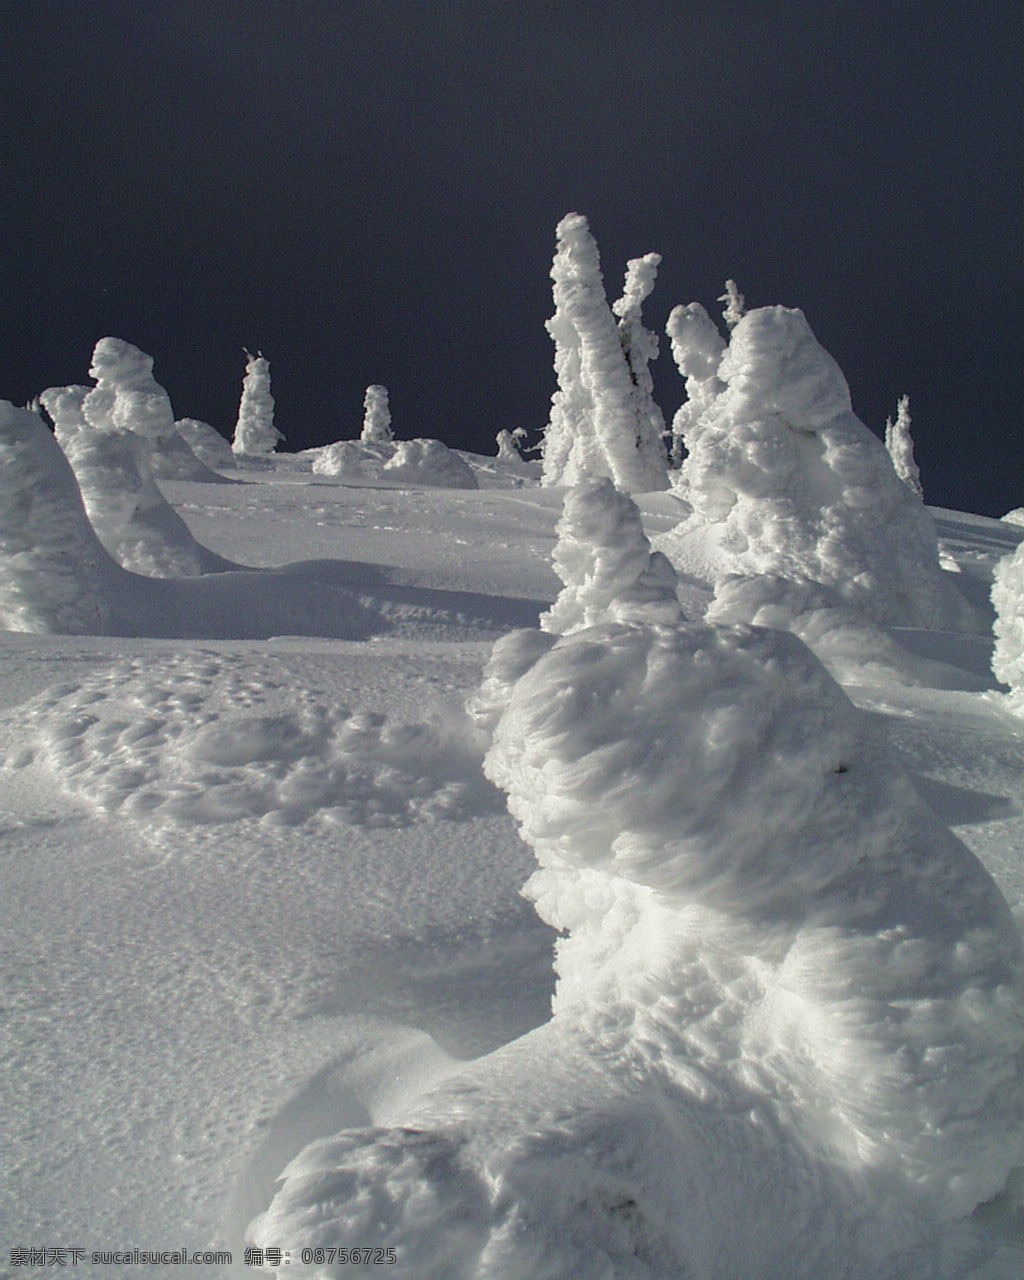 冰雪世界 自然风景 贴图素材 jpg0306 设计素材 自然风光 建筑装饰 灰色